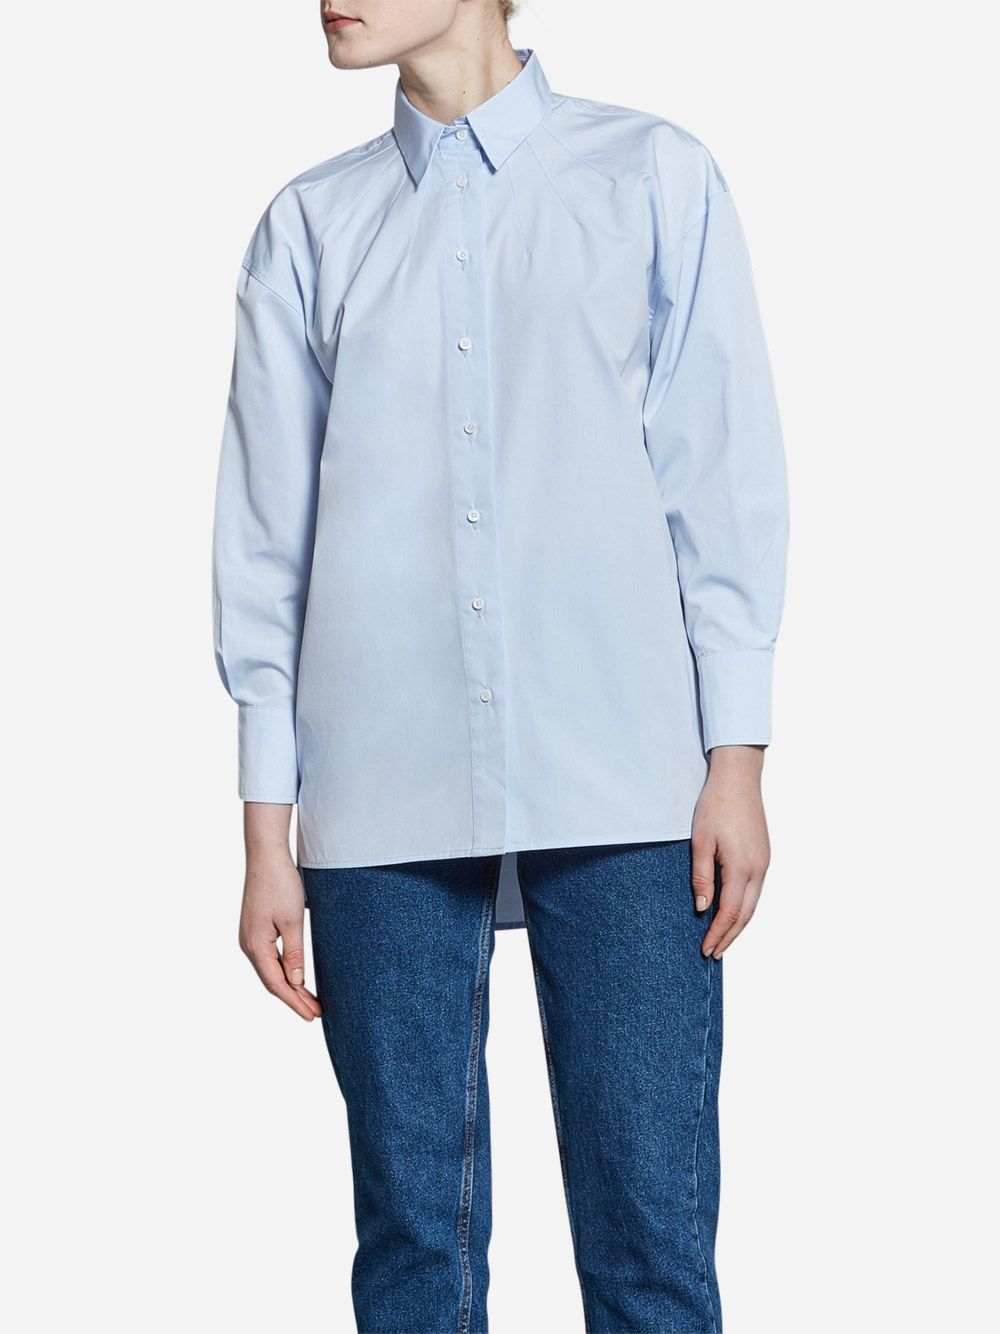 Camisa Azul Essencial 07 | A-line Clothing